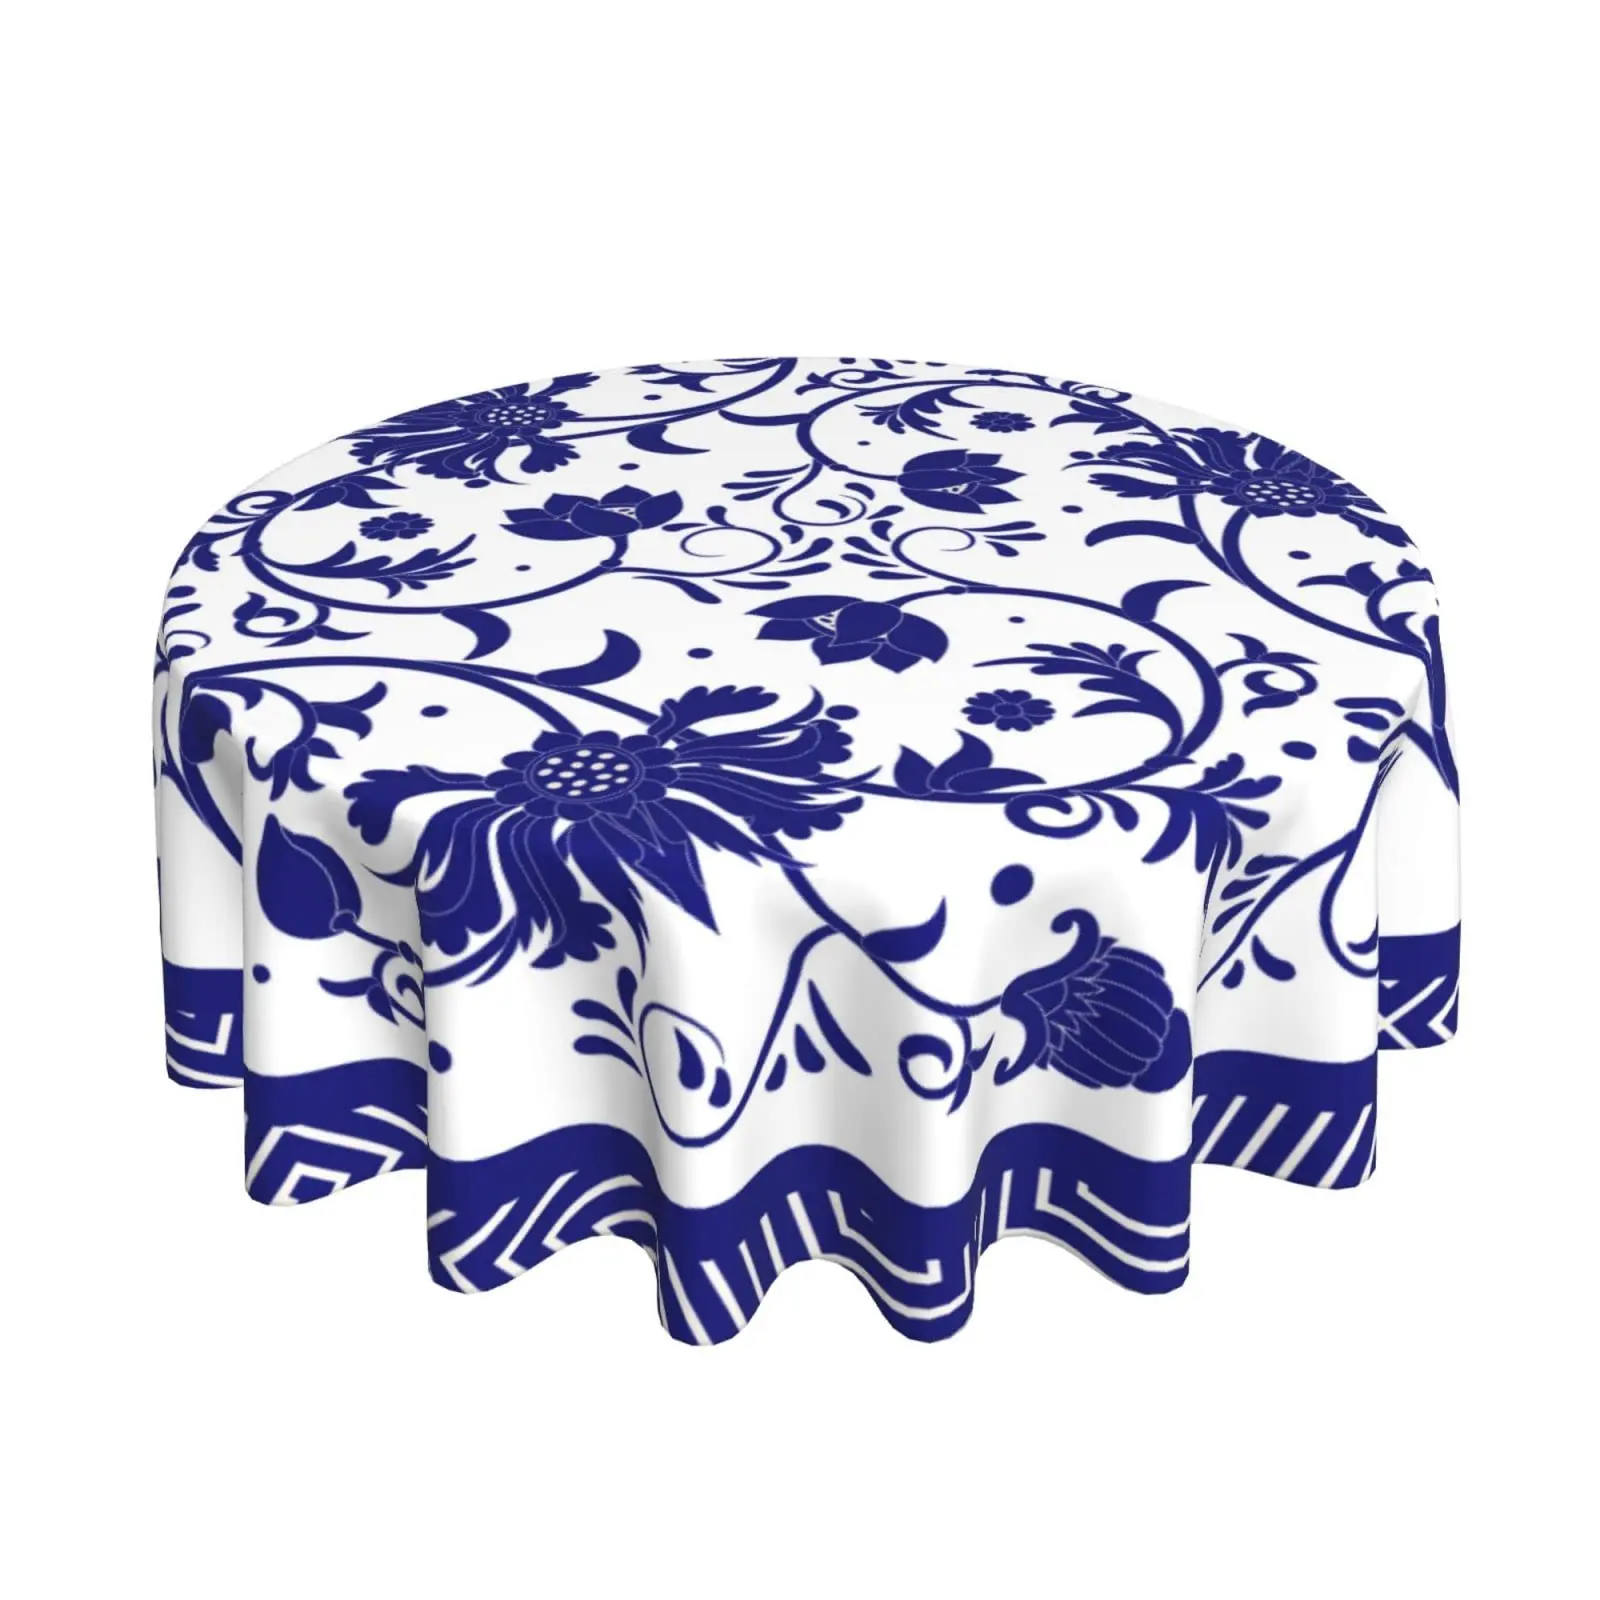 Бело-голубая фарфоровая скатерть с росписью, круглое моющееся покрытие стола для кухни, пикника, вечеринки, 60 дюймов 2